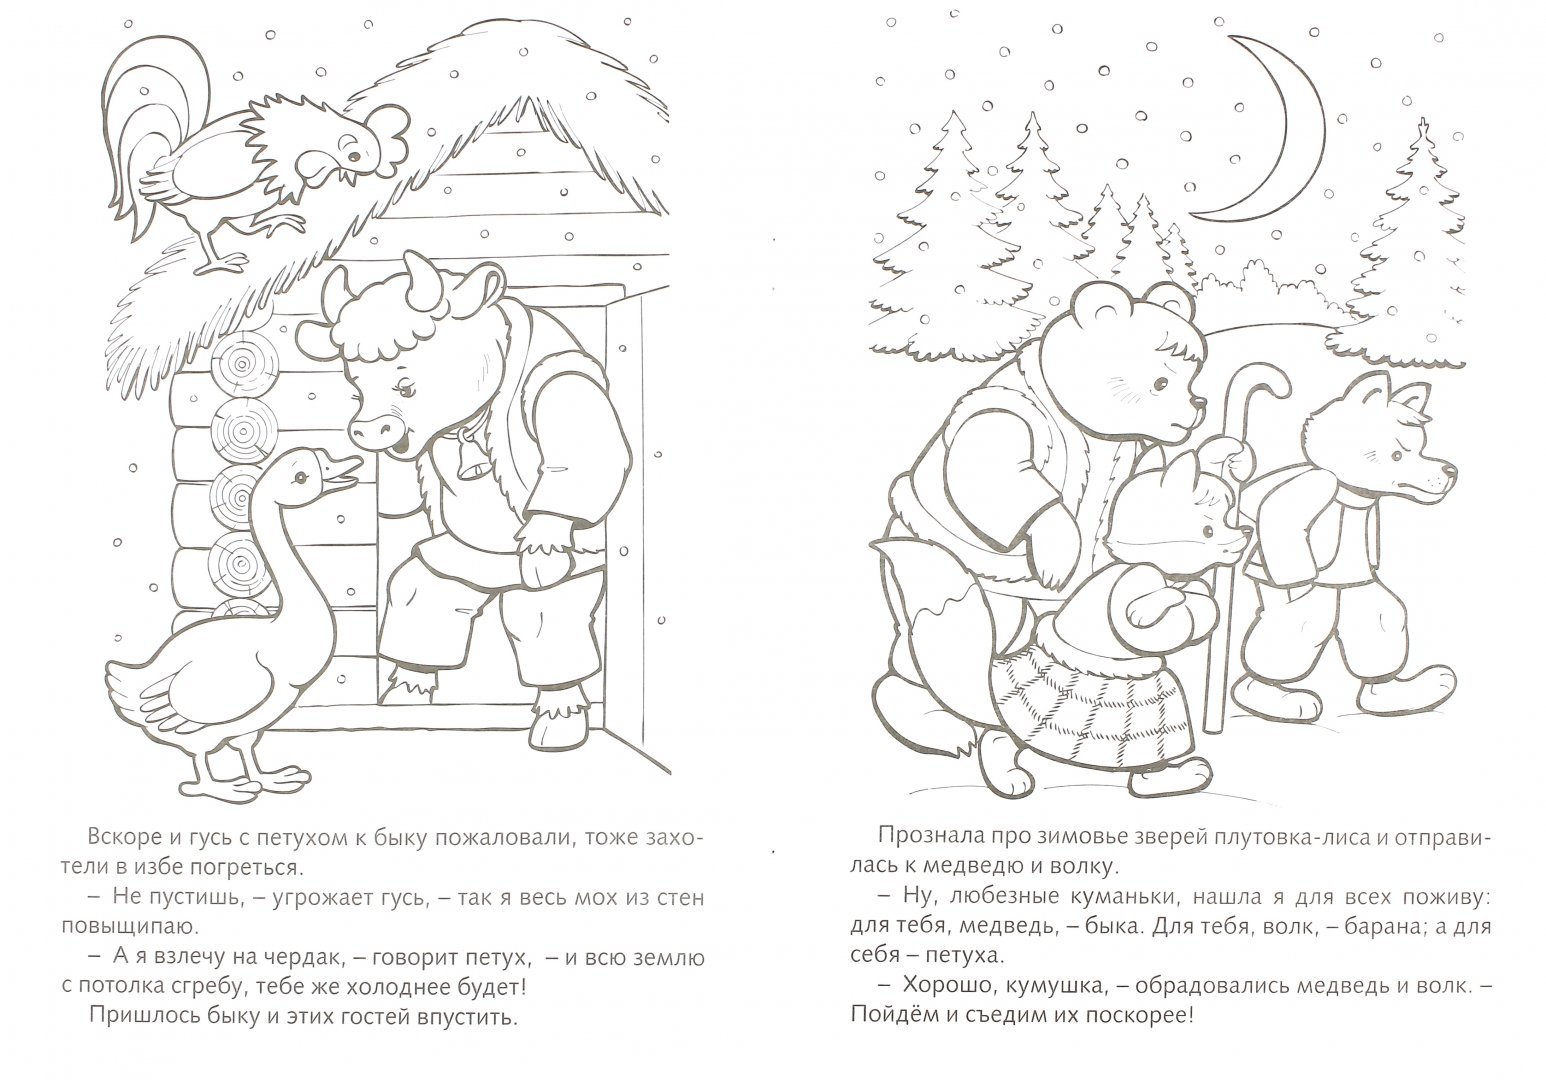 Иллюстрации к русской народной сказке зимовье зверей